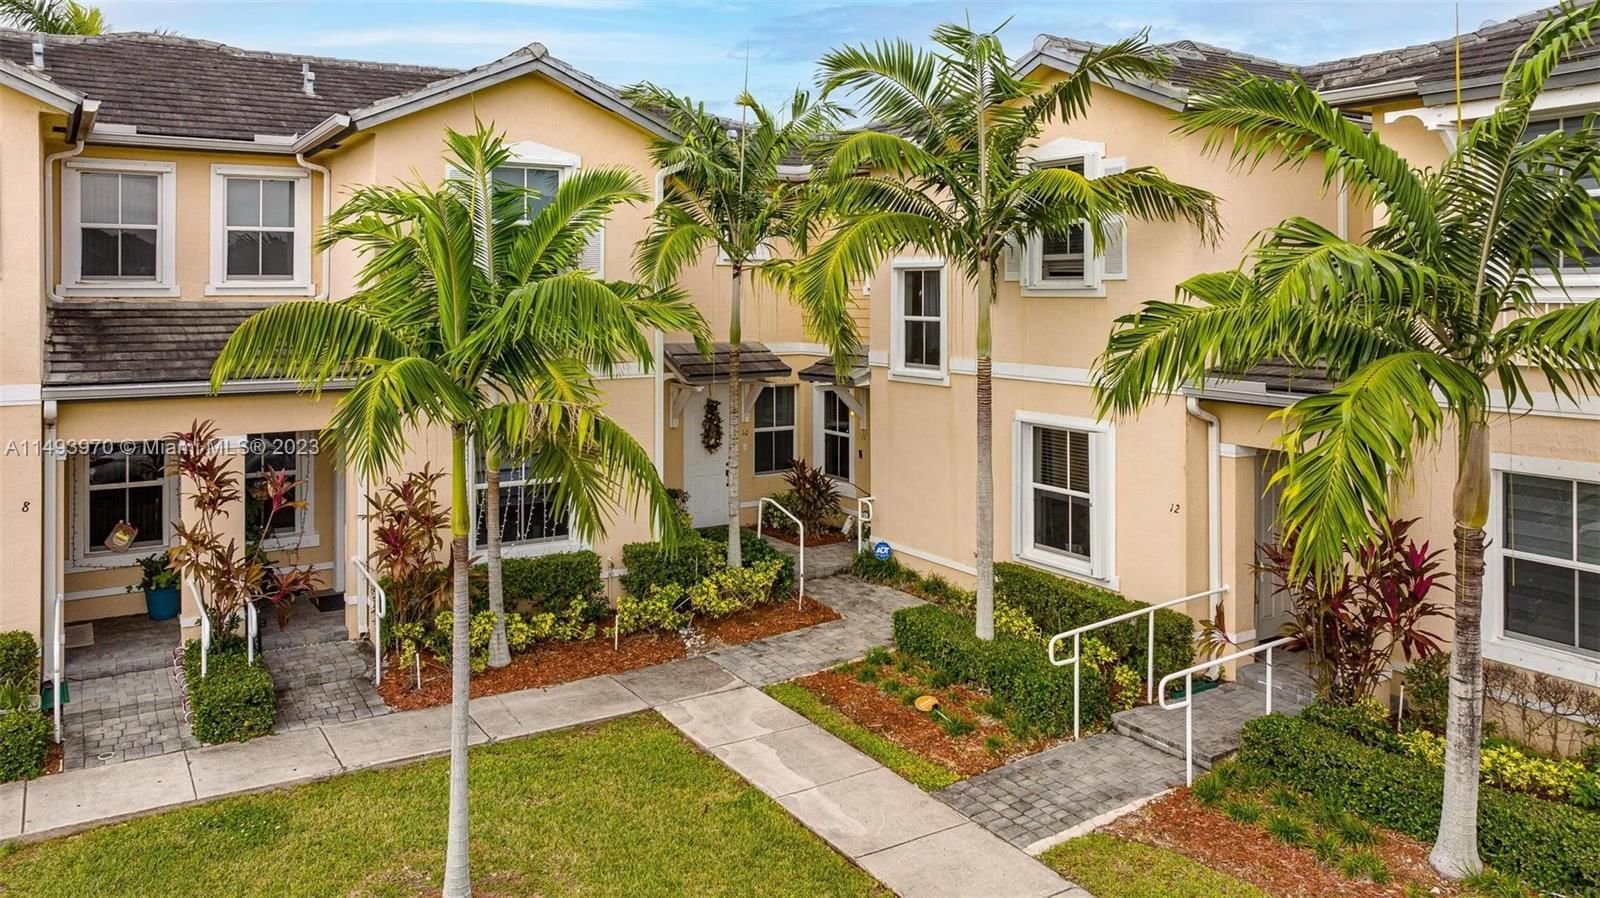 Real estate property located at 142 28th Ter #11, Miami-Dade County, FIJI CONDO NO 1, Homestead, FL